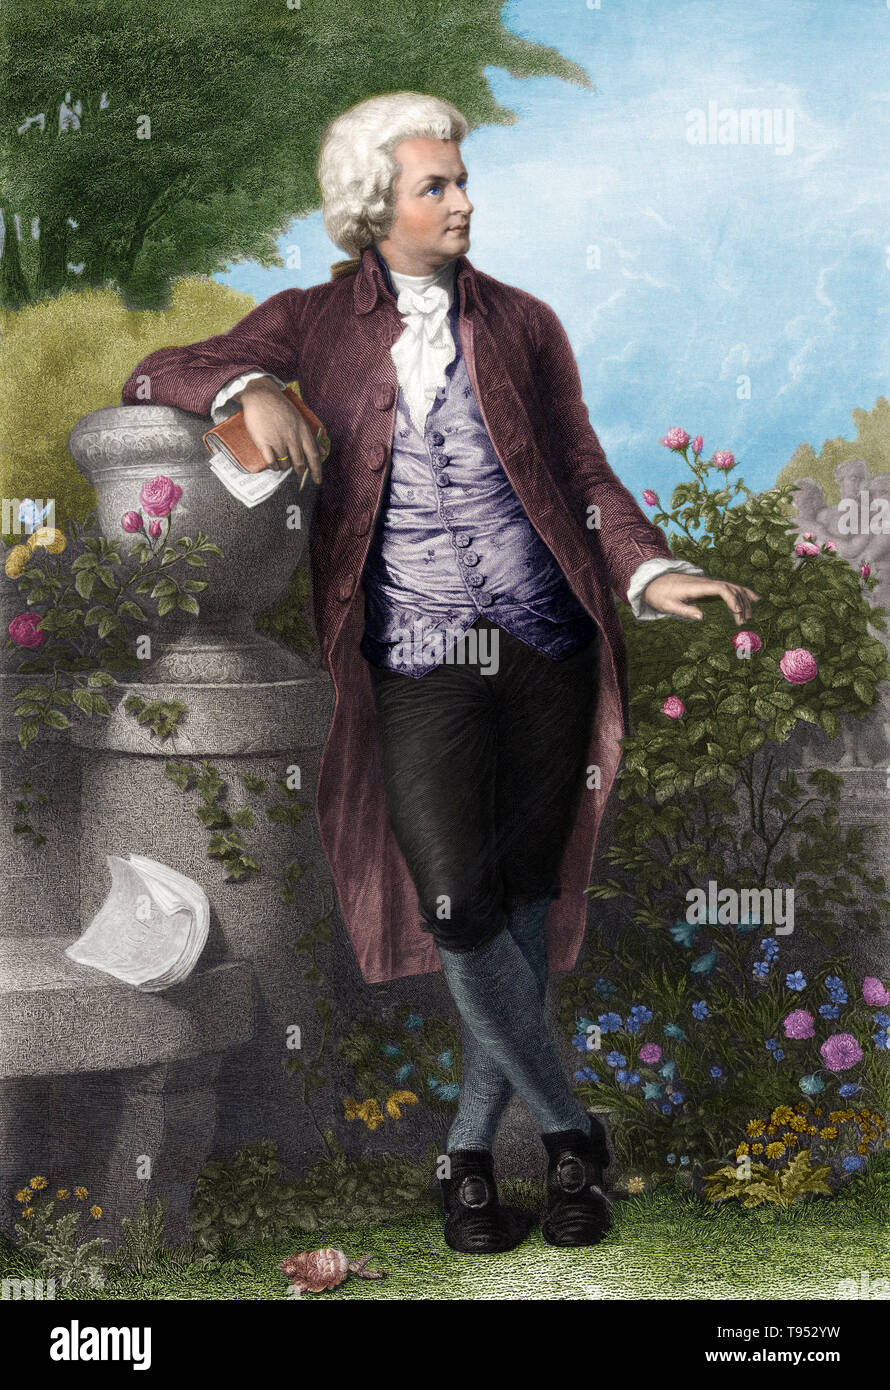 Wolfgang Amadeus Mozart (Gennaio 27, 1756 - 5 dicembre 1791) era un prolifico e influente compositore d'epoca classica. Egli ha composto oltre 600 opere, molti hanno riconosciuto come pinnacoli di sinfonico, concertante, camera, operistica, e musica corale. Egli è tra i più universalmente popolari di compositori di musica classica. Mozart è stato un bambino prodigio autorità sulla tastiera e violino, ha composto da cinque anni di età e eseguita prima di royalty europea. Foto Stock